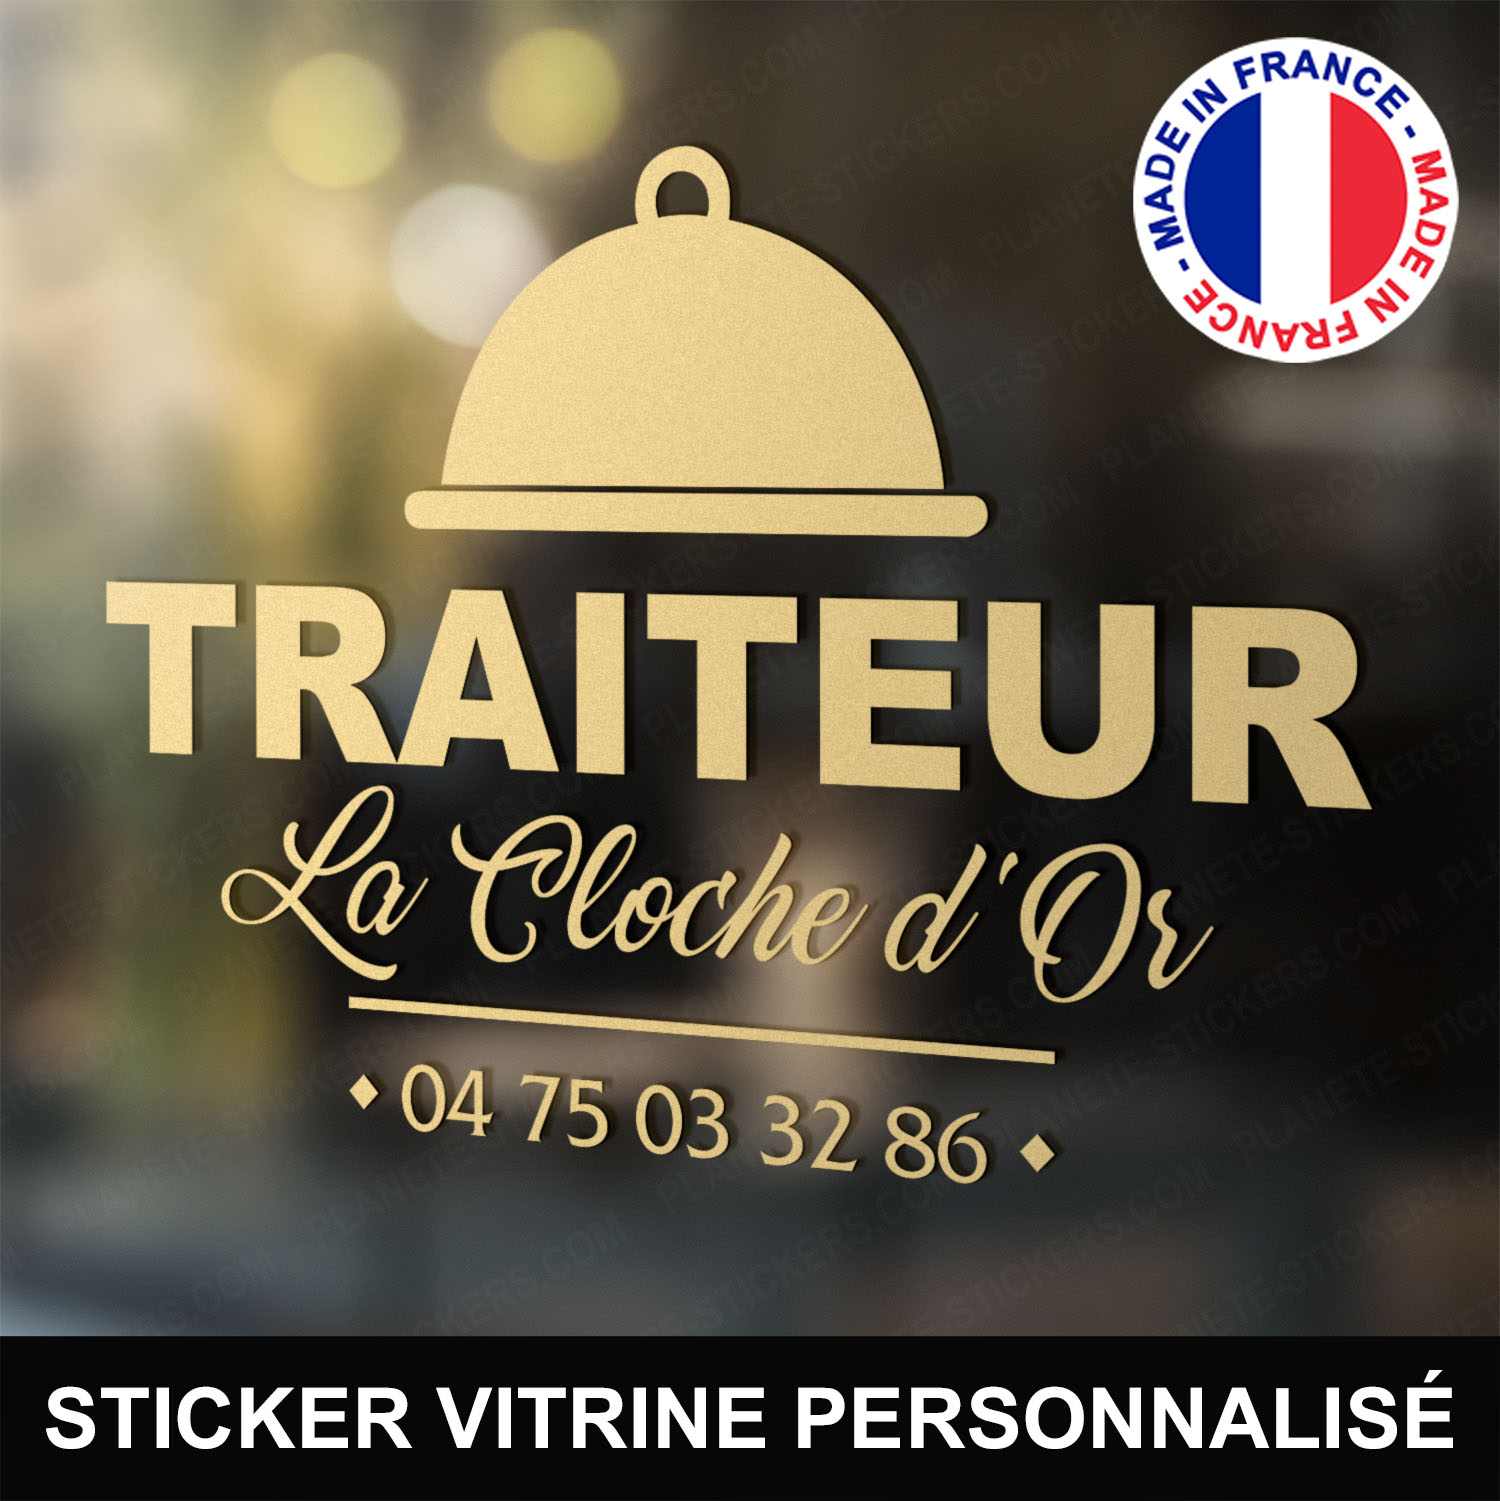 ref1traiteurvitrine-stickers-traiteur-vitrine-sticker-personnalisé-autocollant-pro-restaurateur-restaurant-vitre-professionnel-logo-cloche